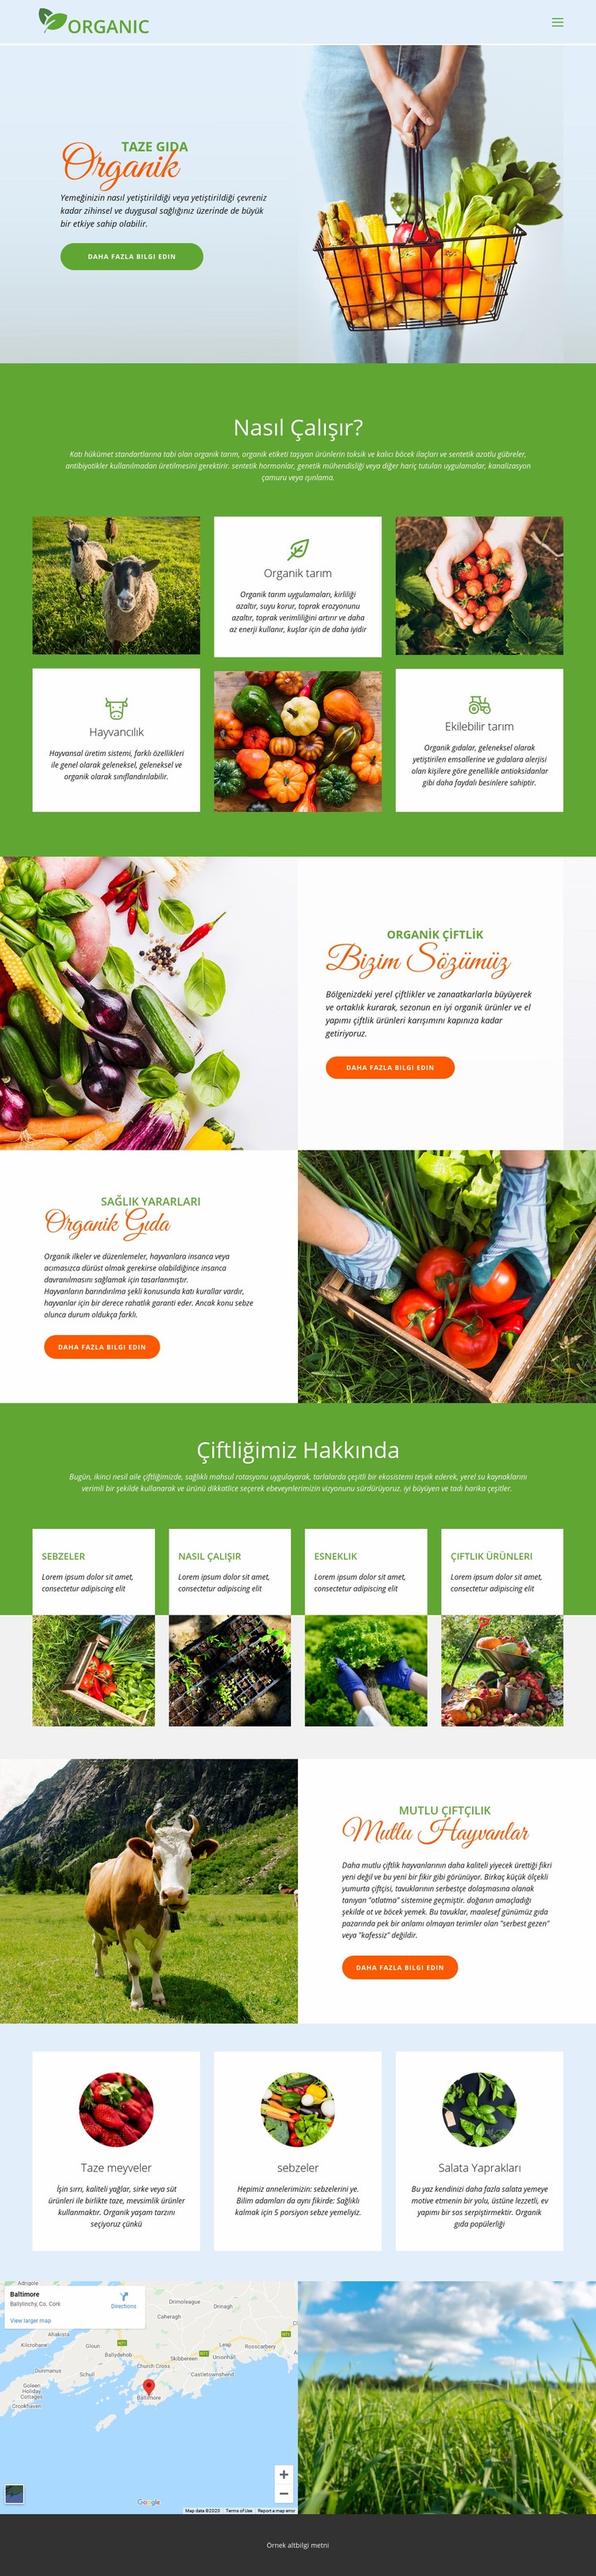 En iyi organik yiyecekleri yiyin Web sitesi tasarımı